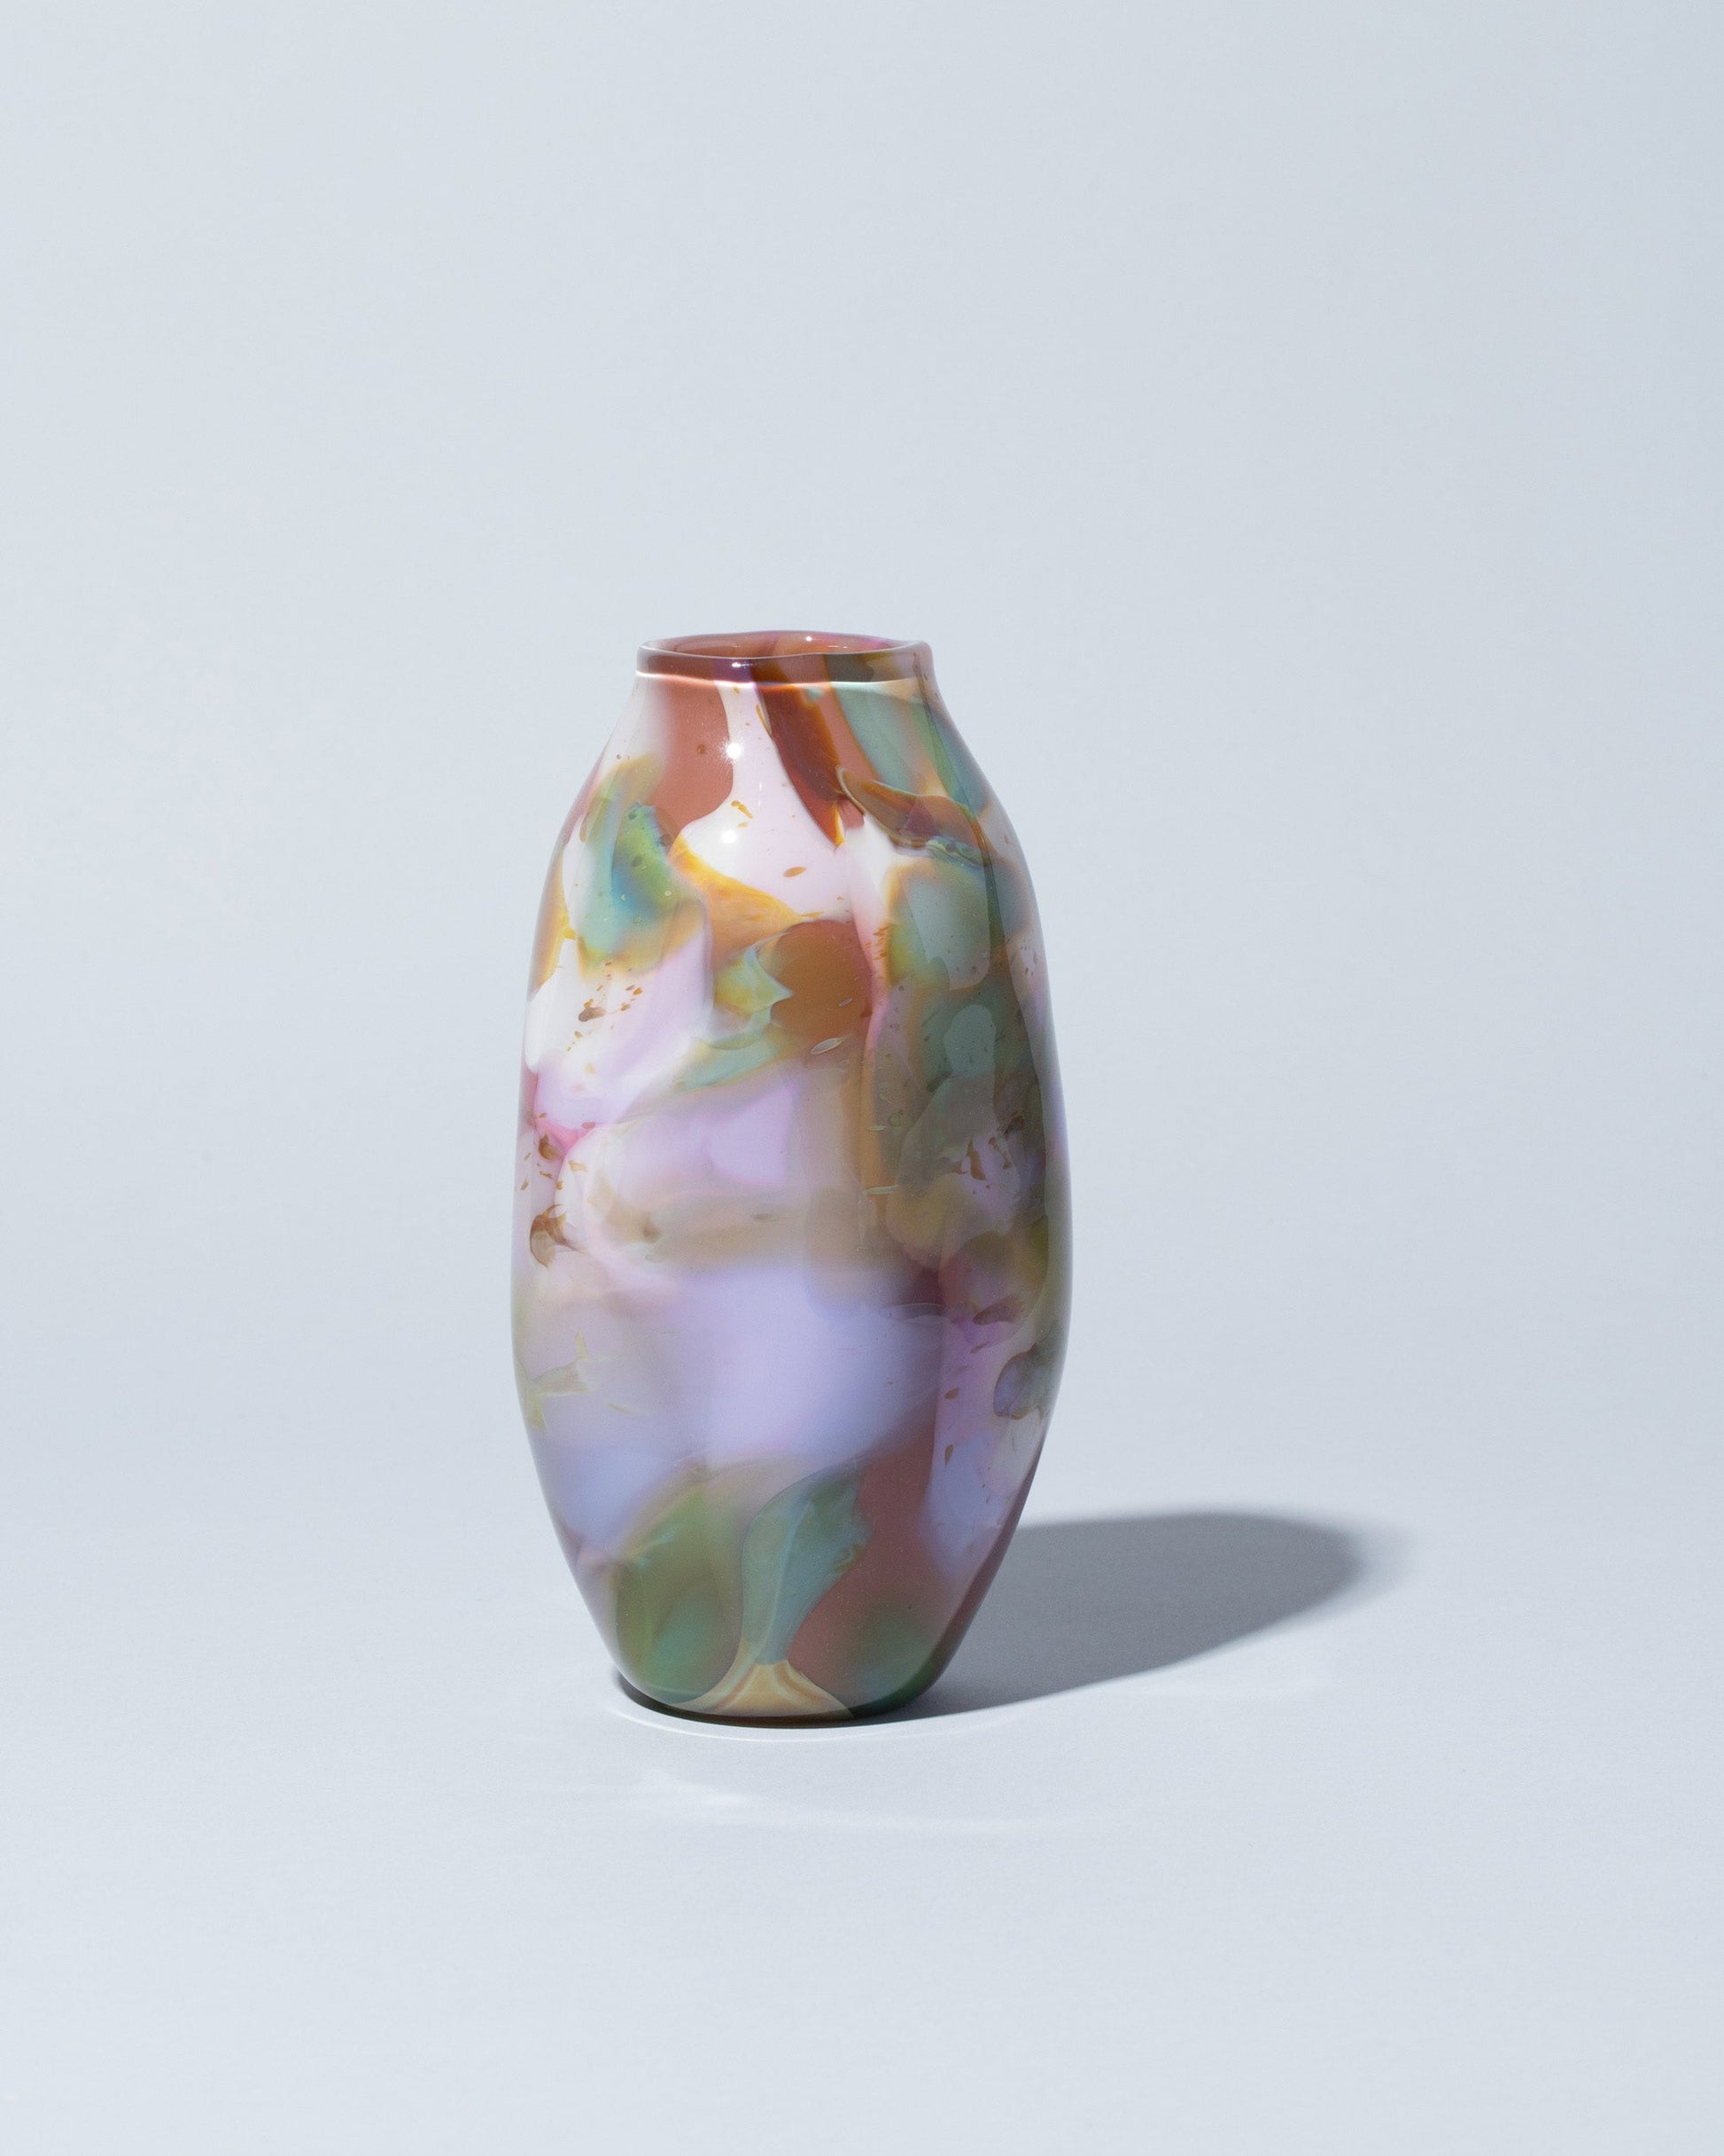 BaleFire Glass Medium Dusty Rose Epiphany Vase on light color background.